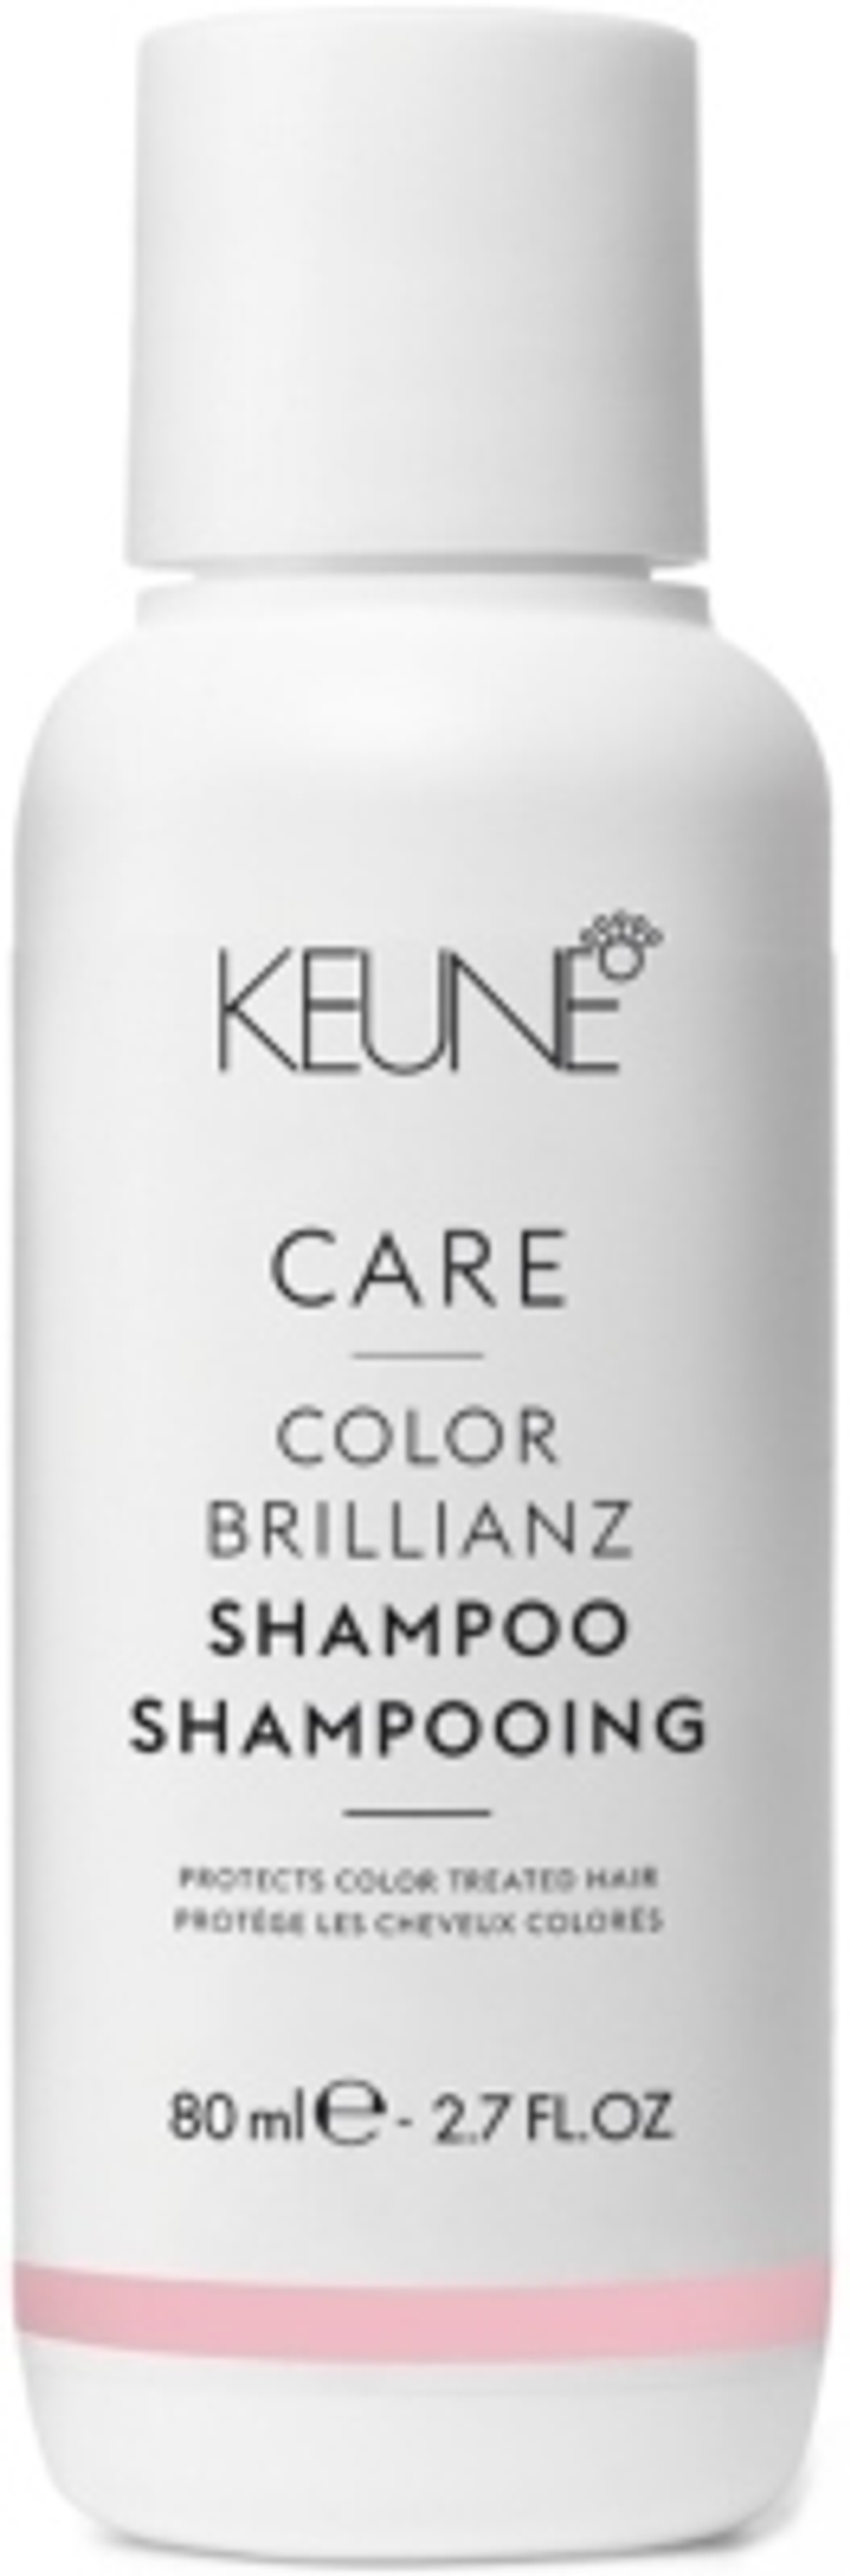 Keune Шампунь яркость цвета CARE Color Brillianz Shampoo 80 мл